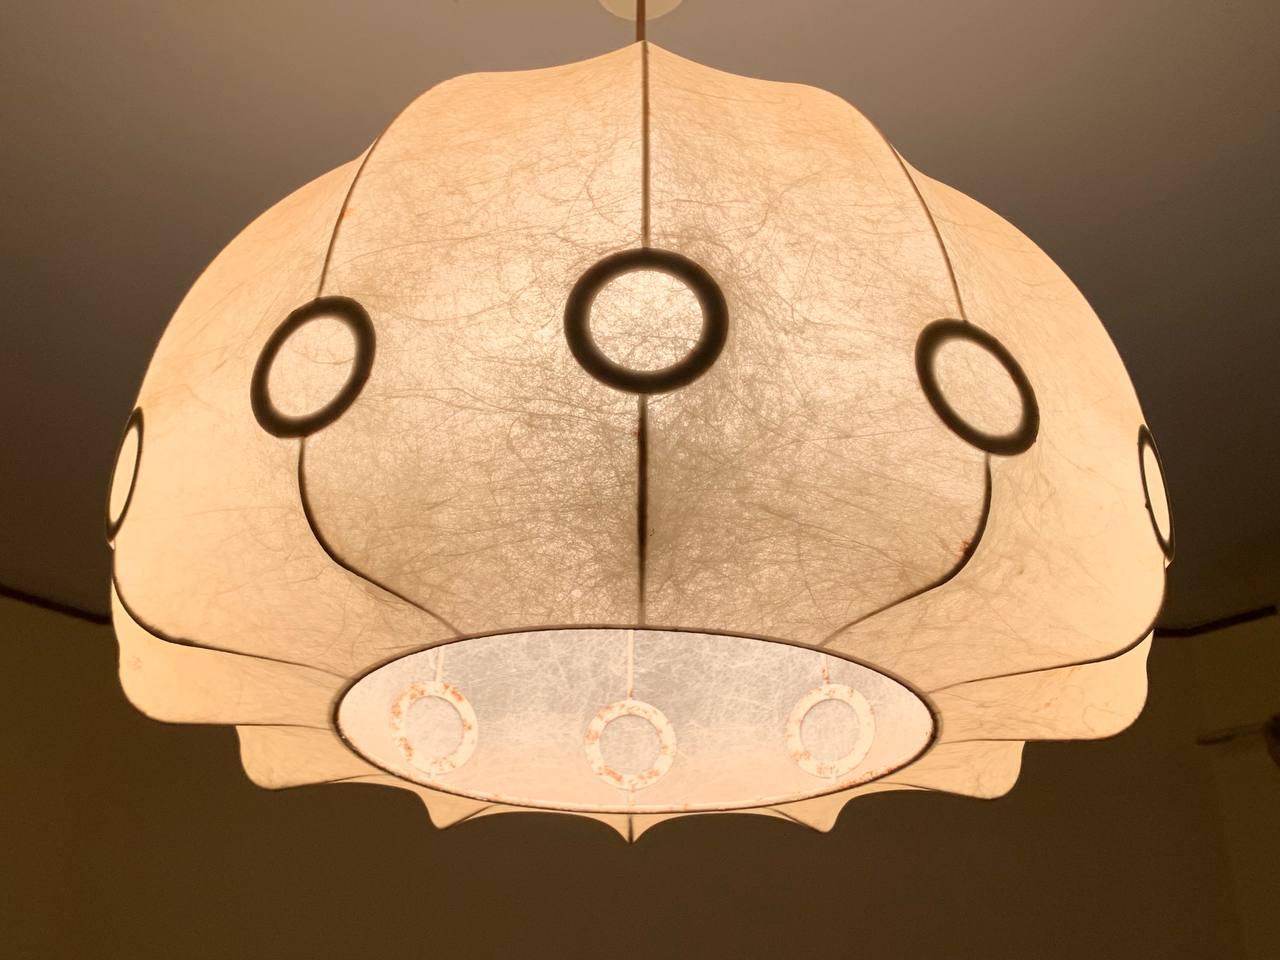 Lampe à suspension Cocoon conçue par Friedel Wauver pour Goldkant Leuchten, Allemagne, années 60

L'un des aspects les plus remarquables de cette pièce est sa capacité à dépasser les limites du temps et du style. Bien qu'il soit né dans les années